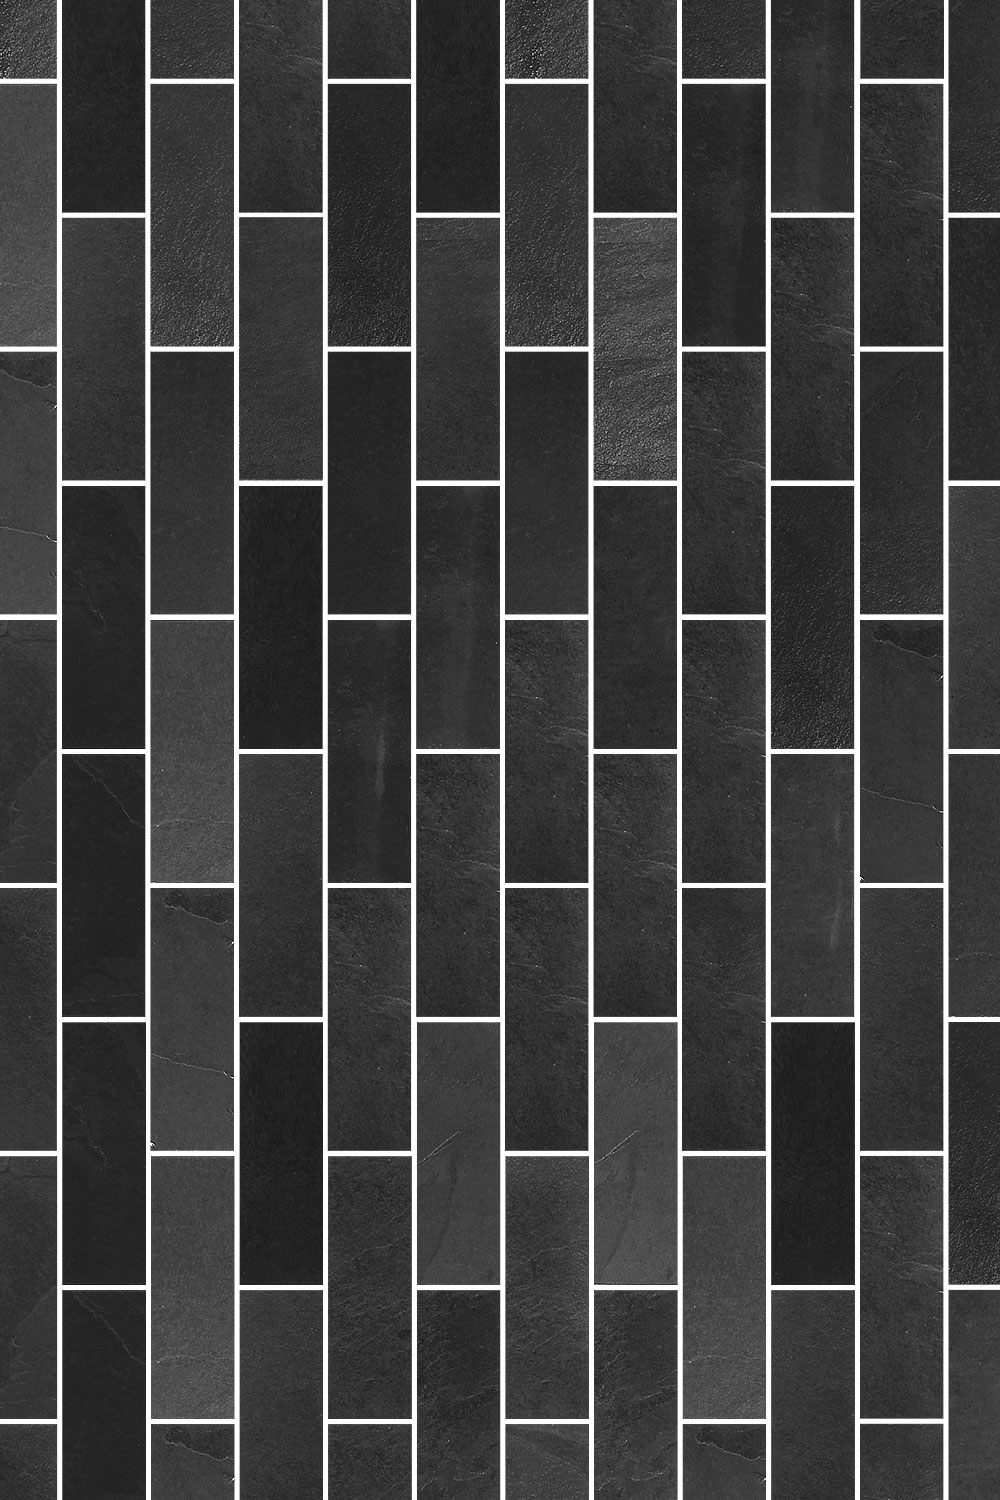 Black Gray Slate Subway Backsplash Tile BA1070 4